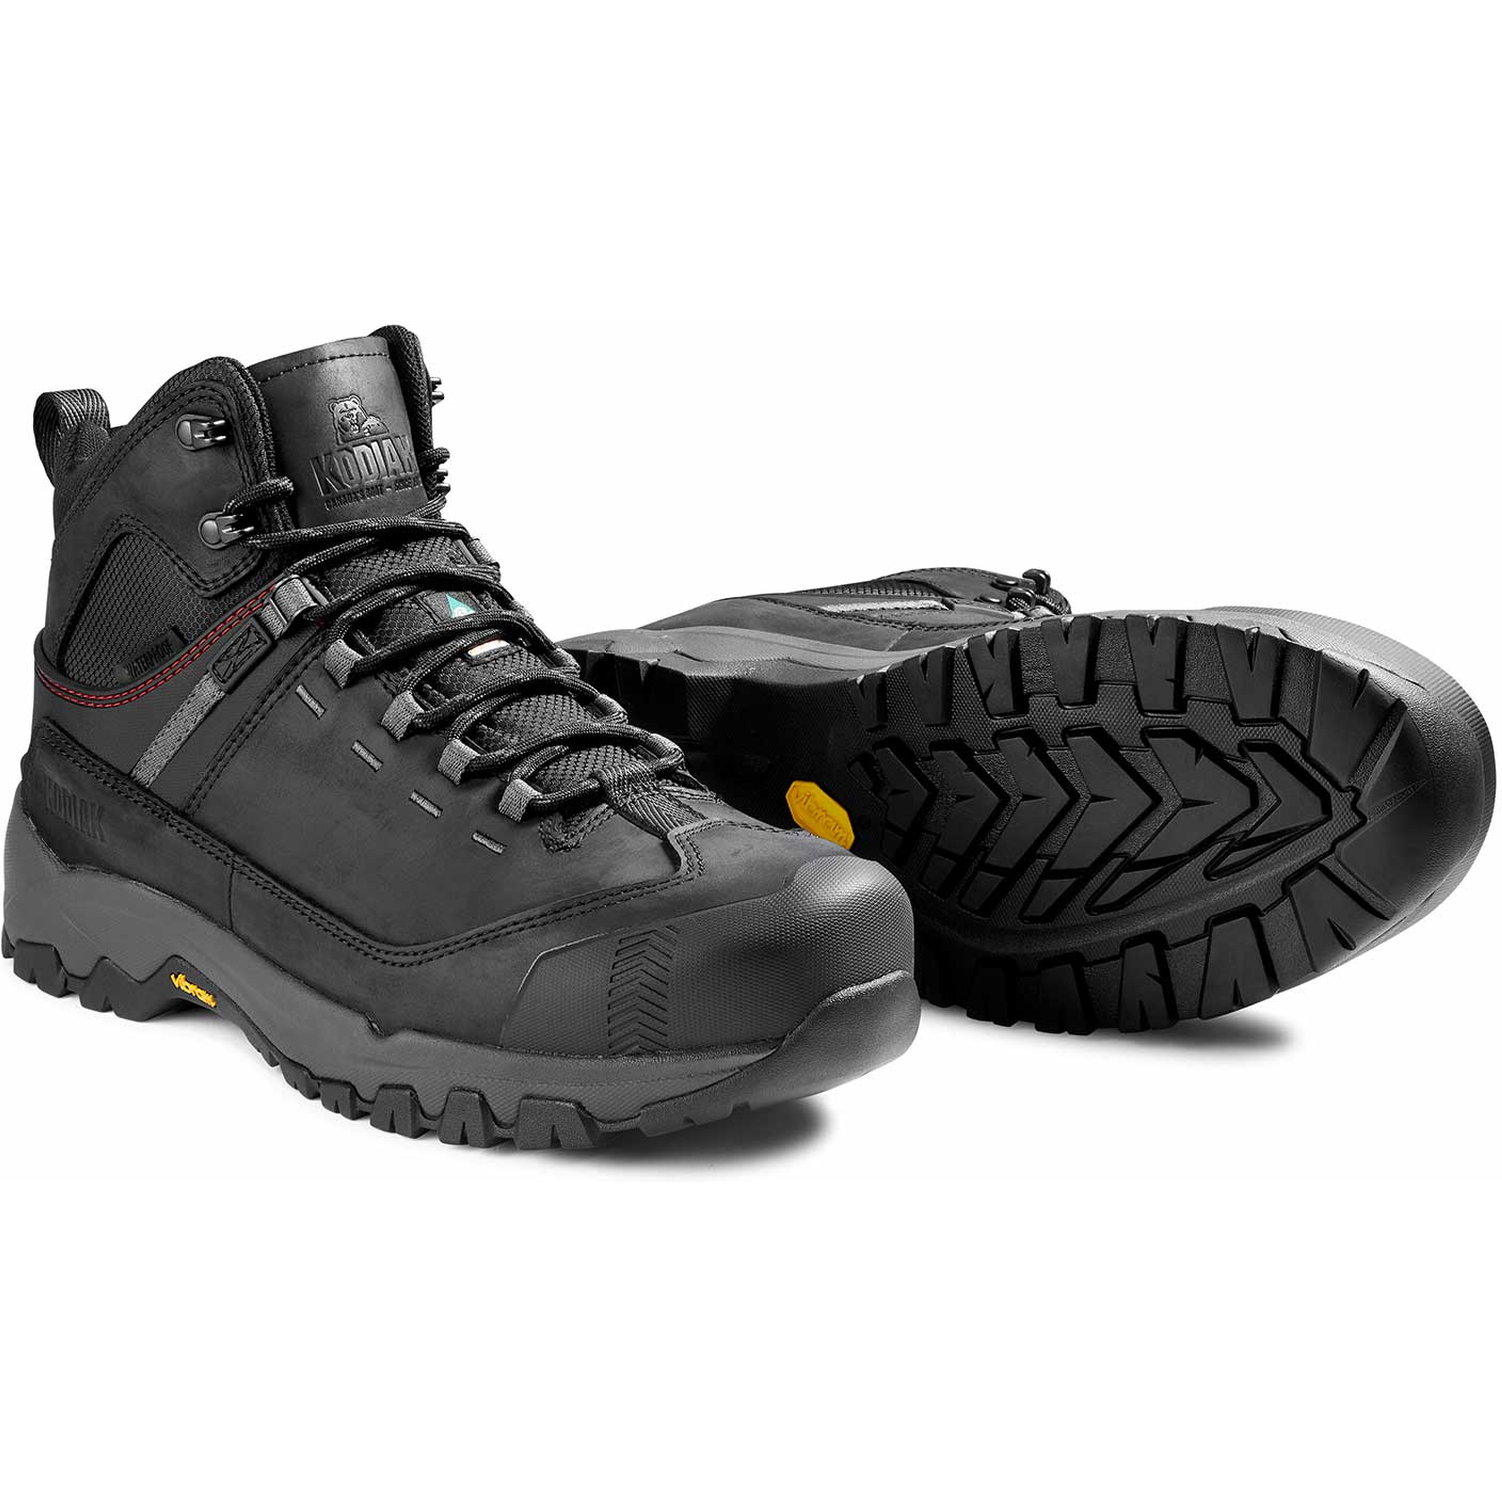 Kodiak Men's Quest Bound Comp Toe WP Hiker Work Boot -Black- 4TELBK  - Overlook Boots